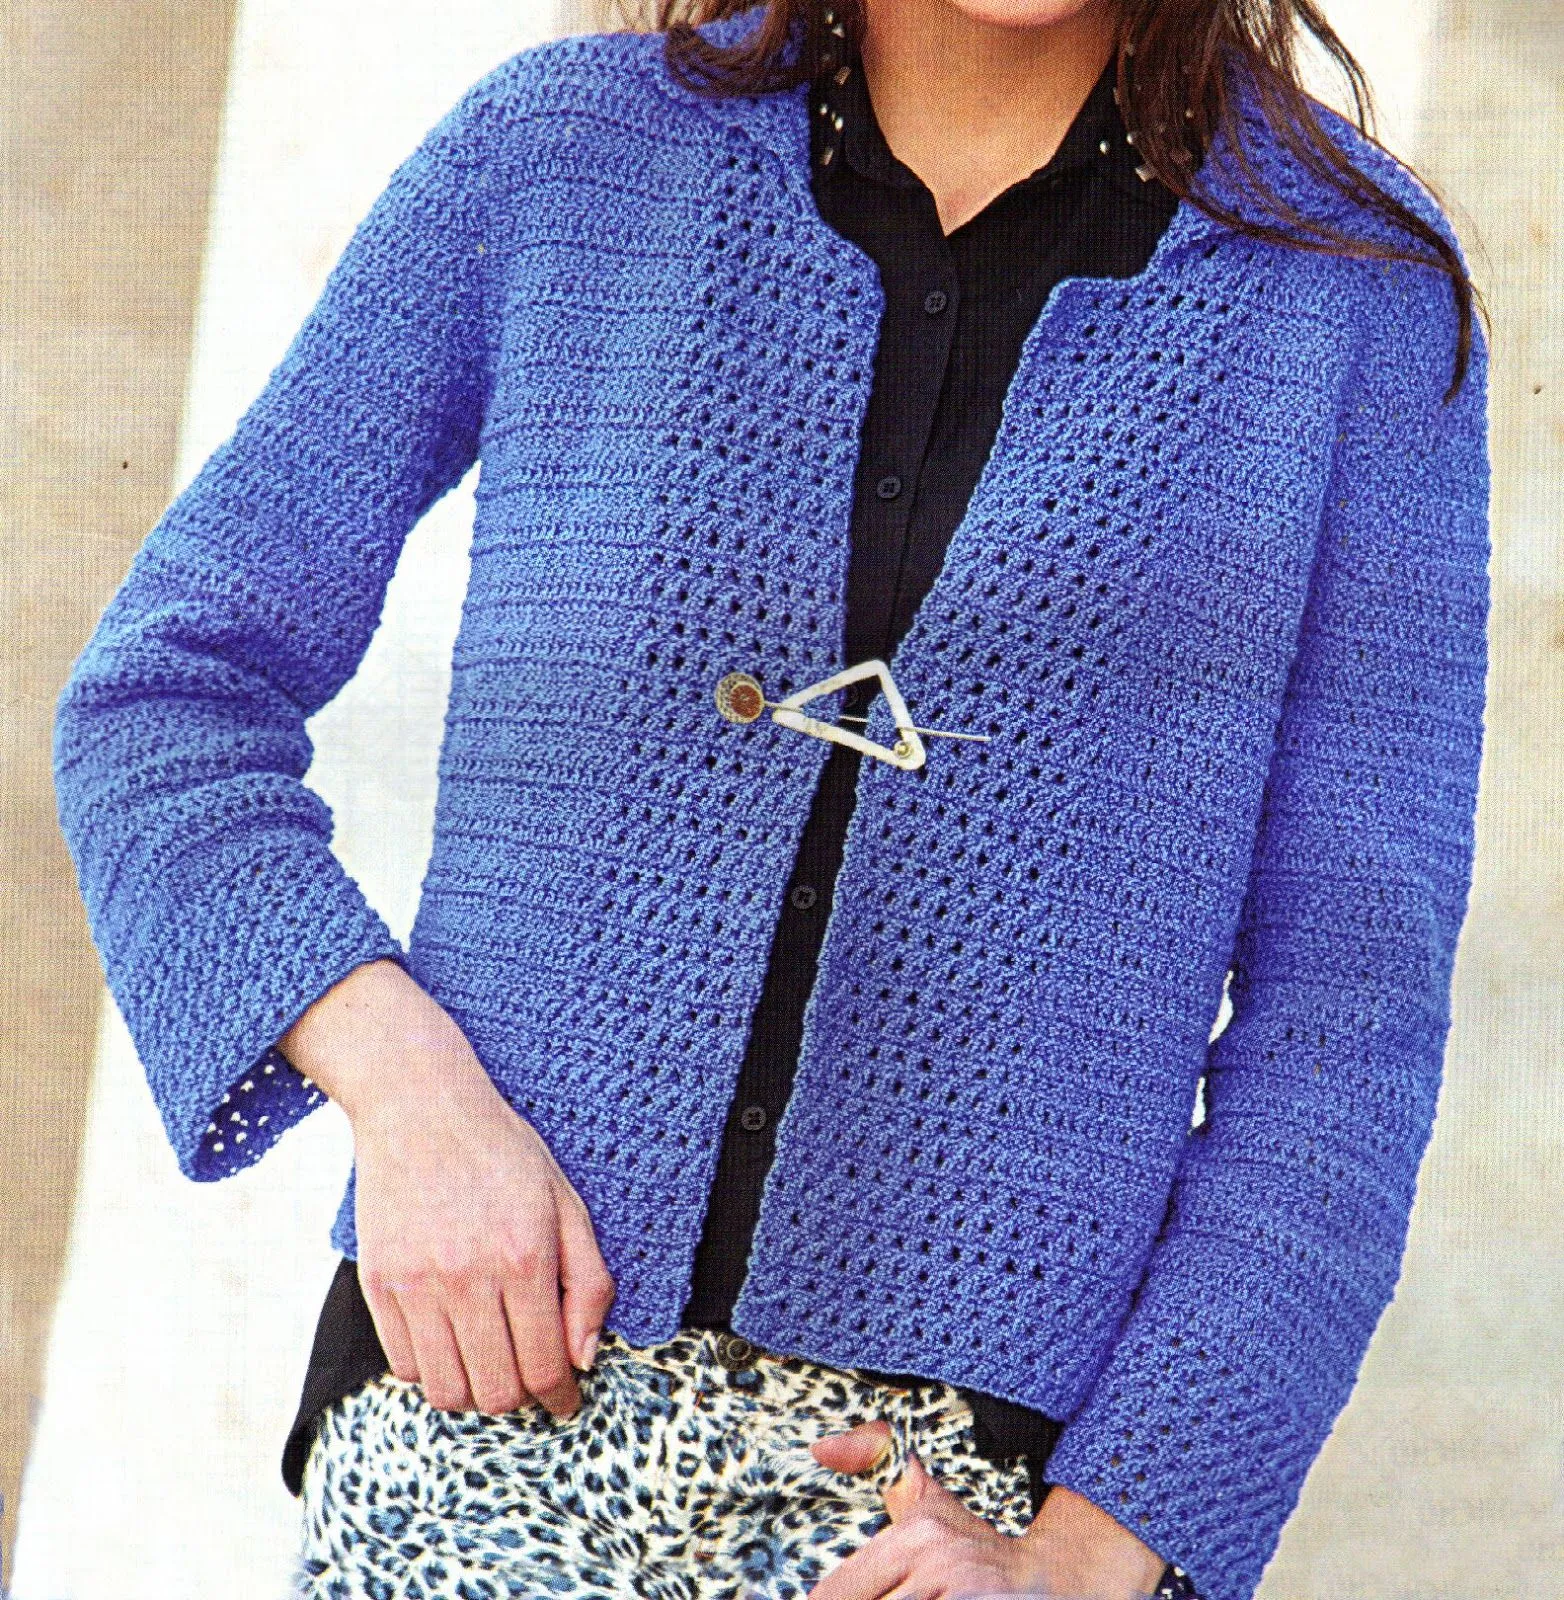 tejidos artesanales en crochet: saco azul francia tejido en crochet.